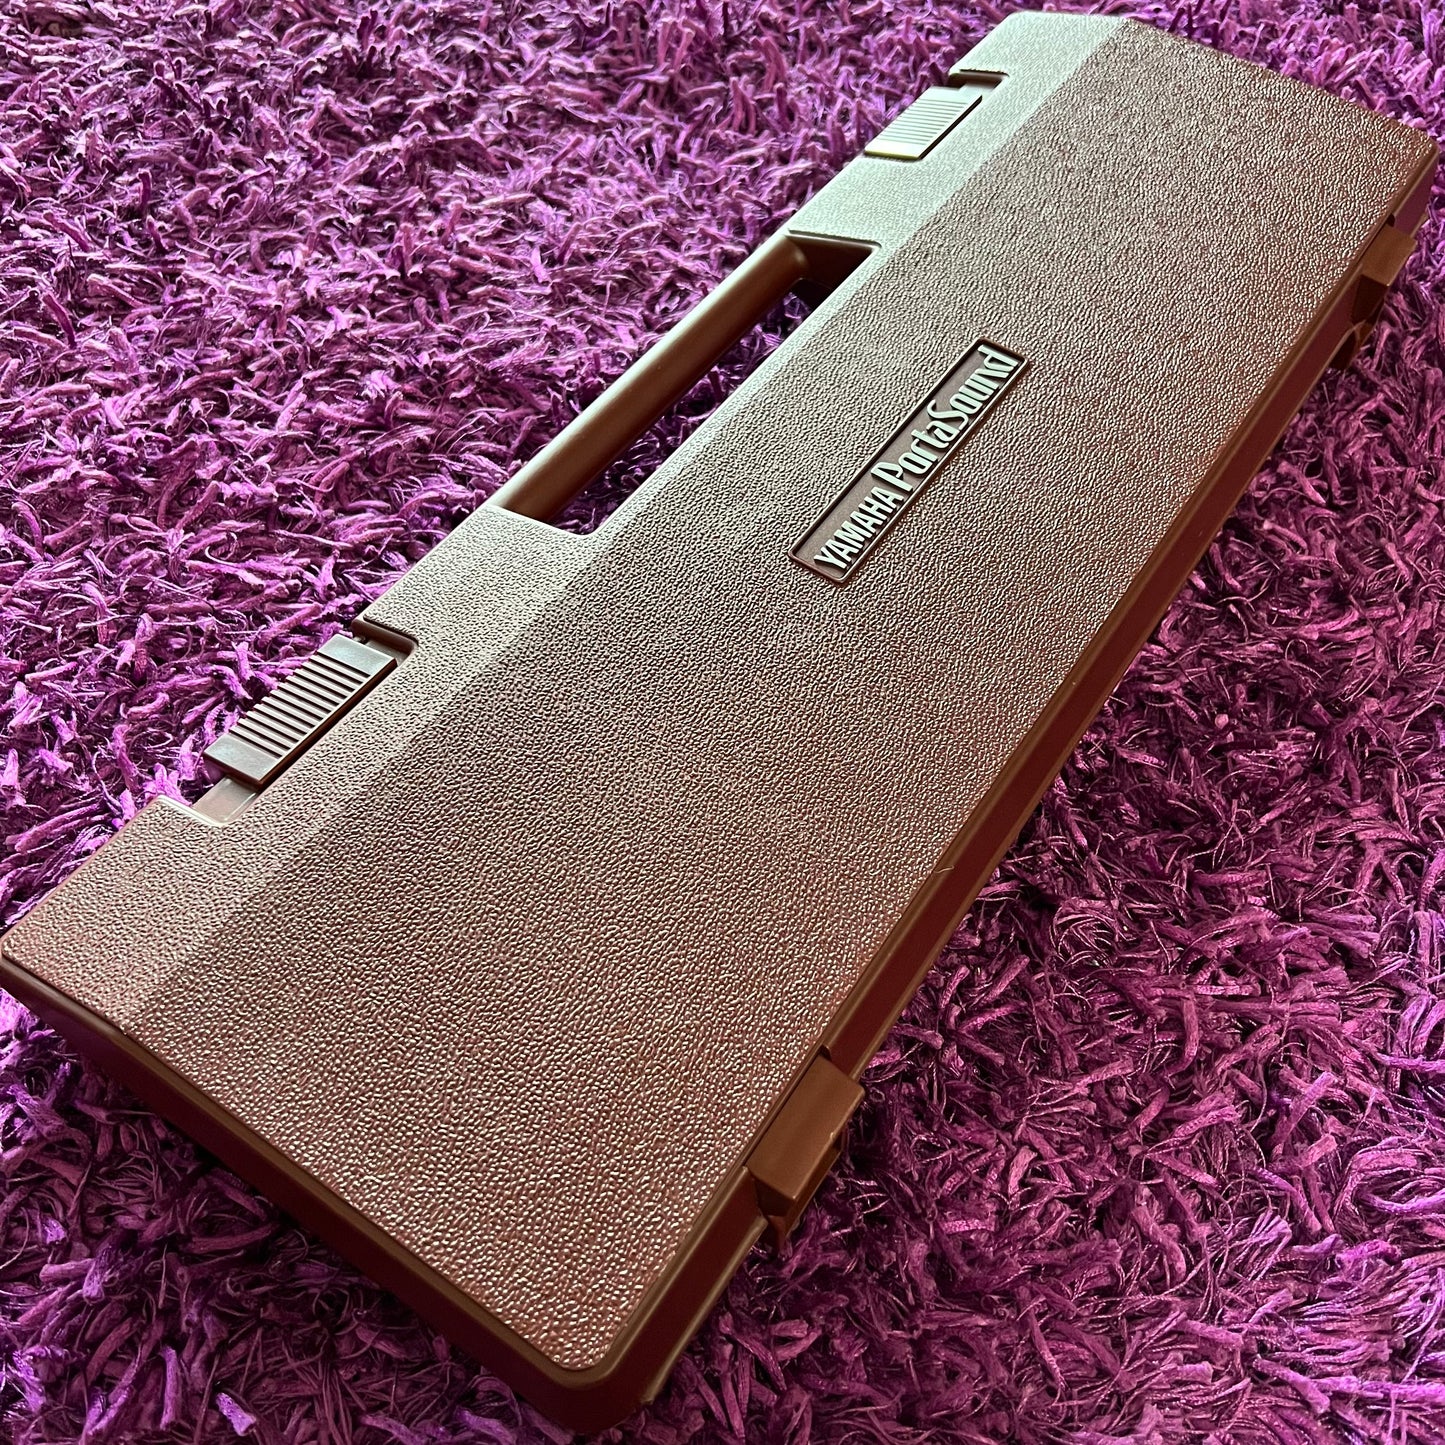 Yamaha PS-400 PortaSound Retro FM Synthesizer (Matching Hardcase)